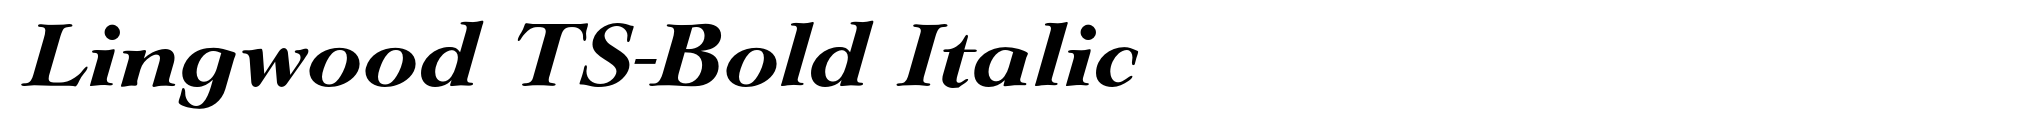 Lingwood TS-Bold Italic image